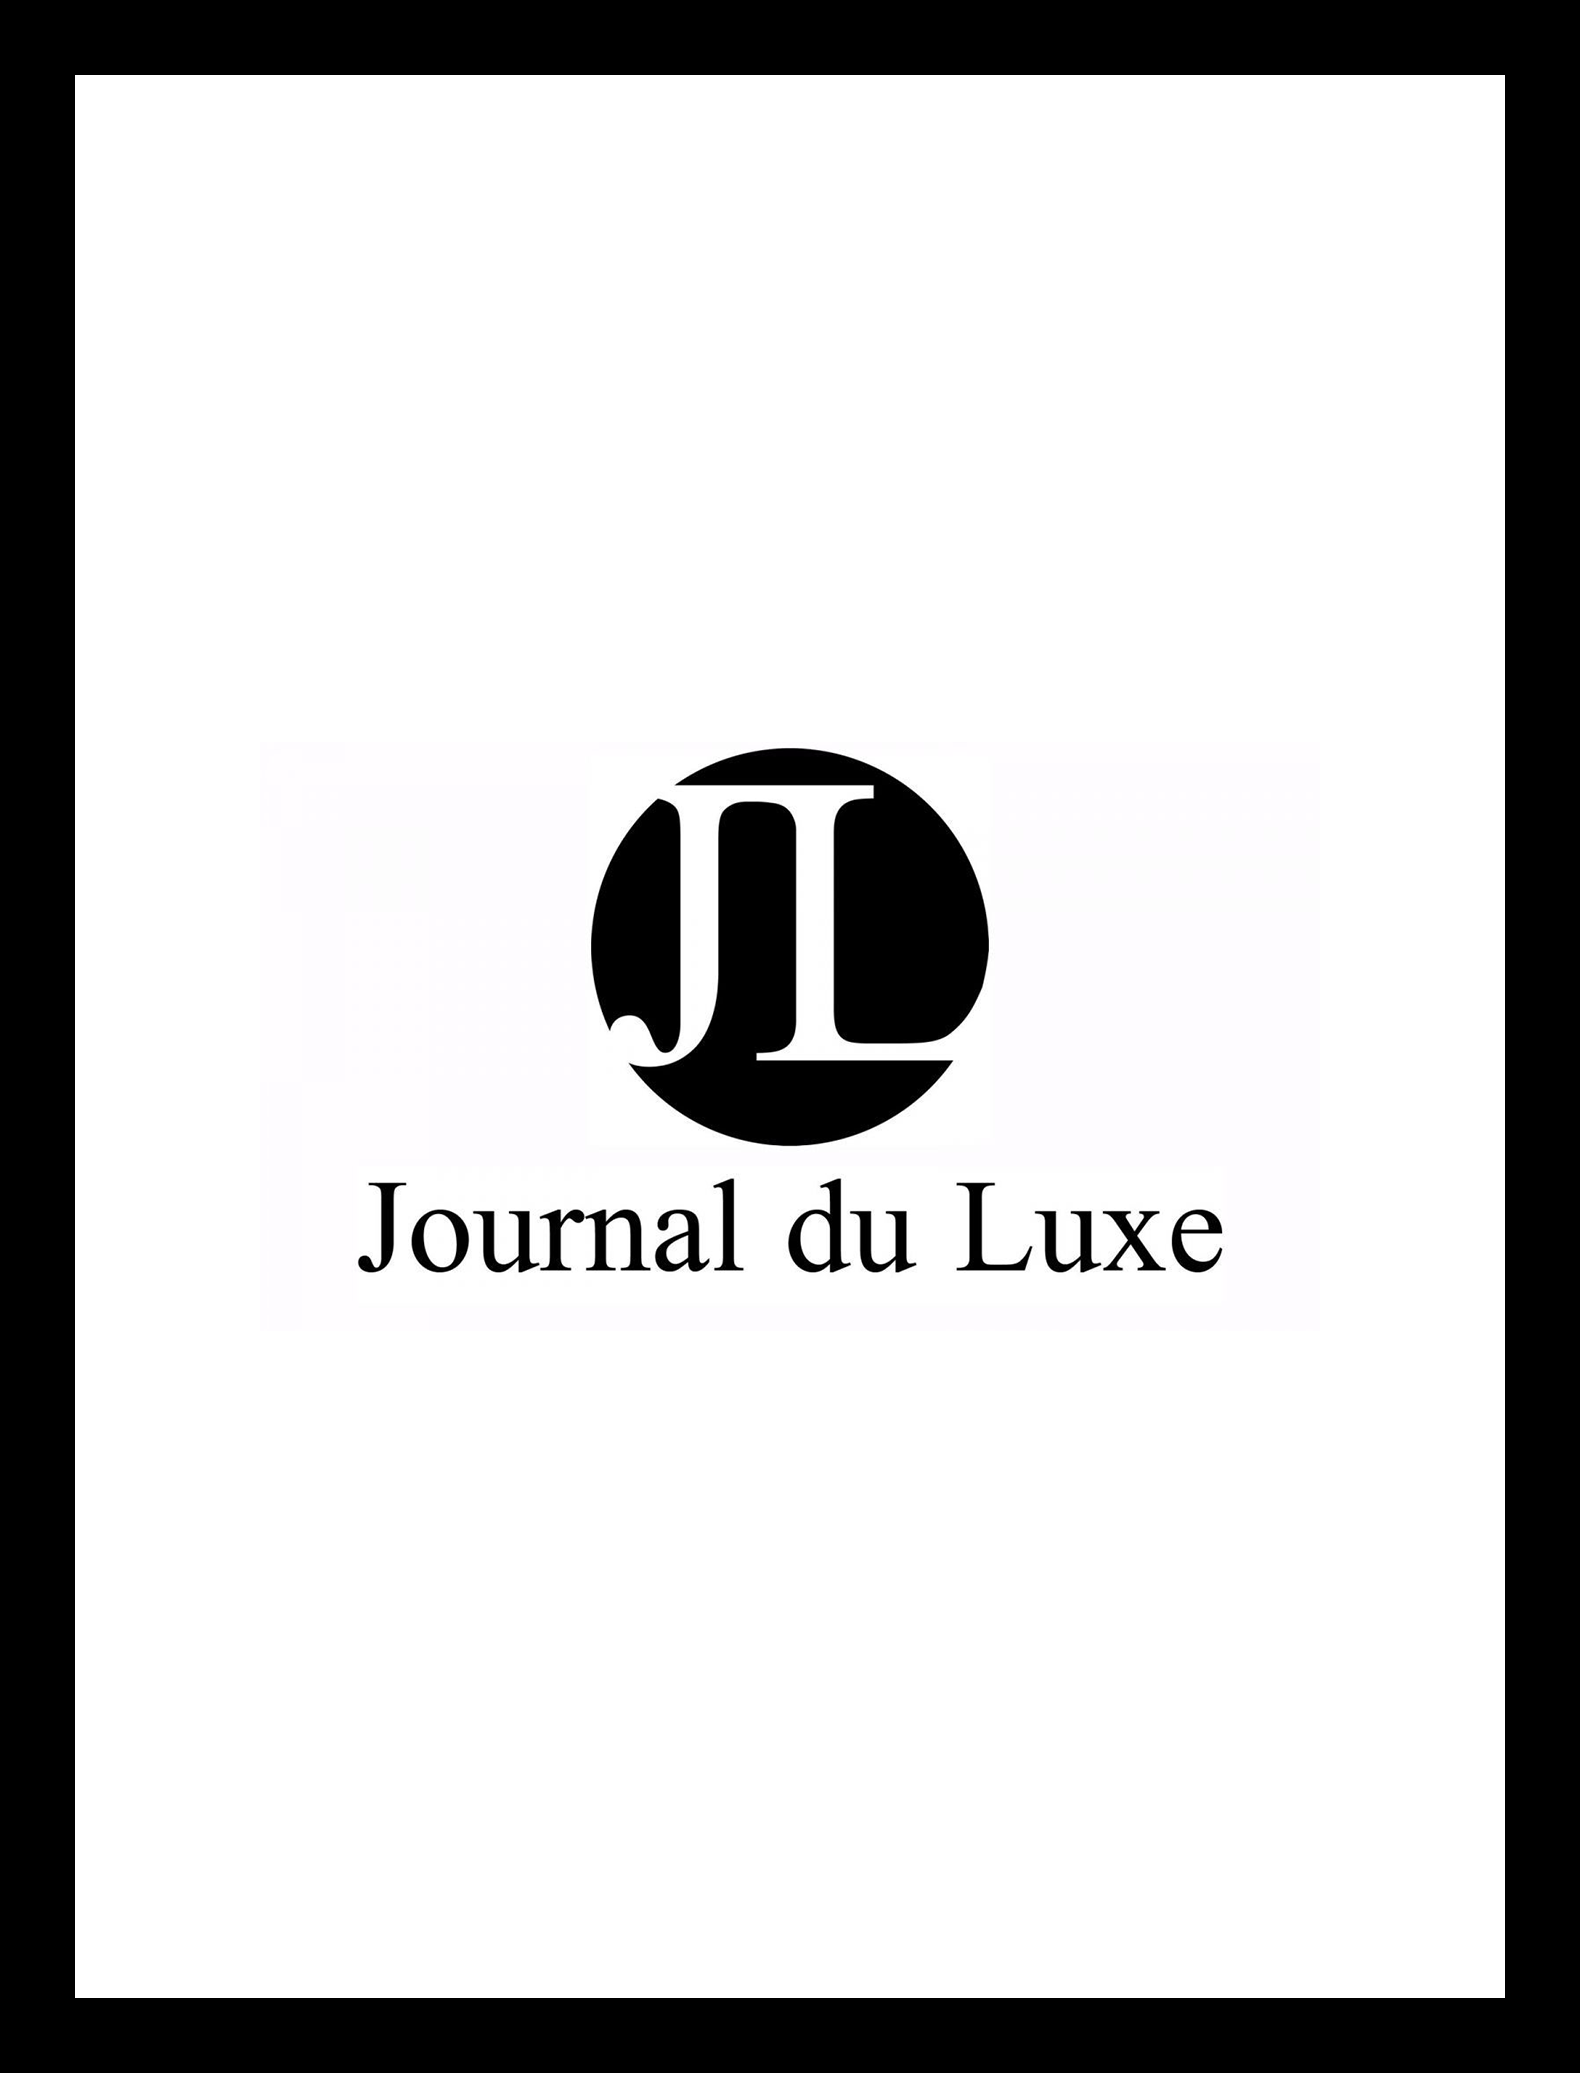 logo journal du luxe